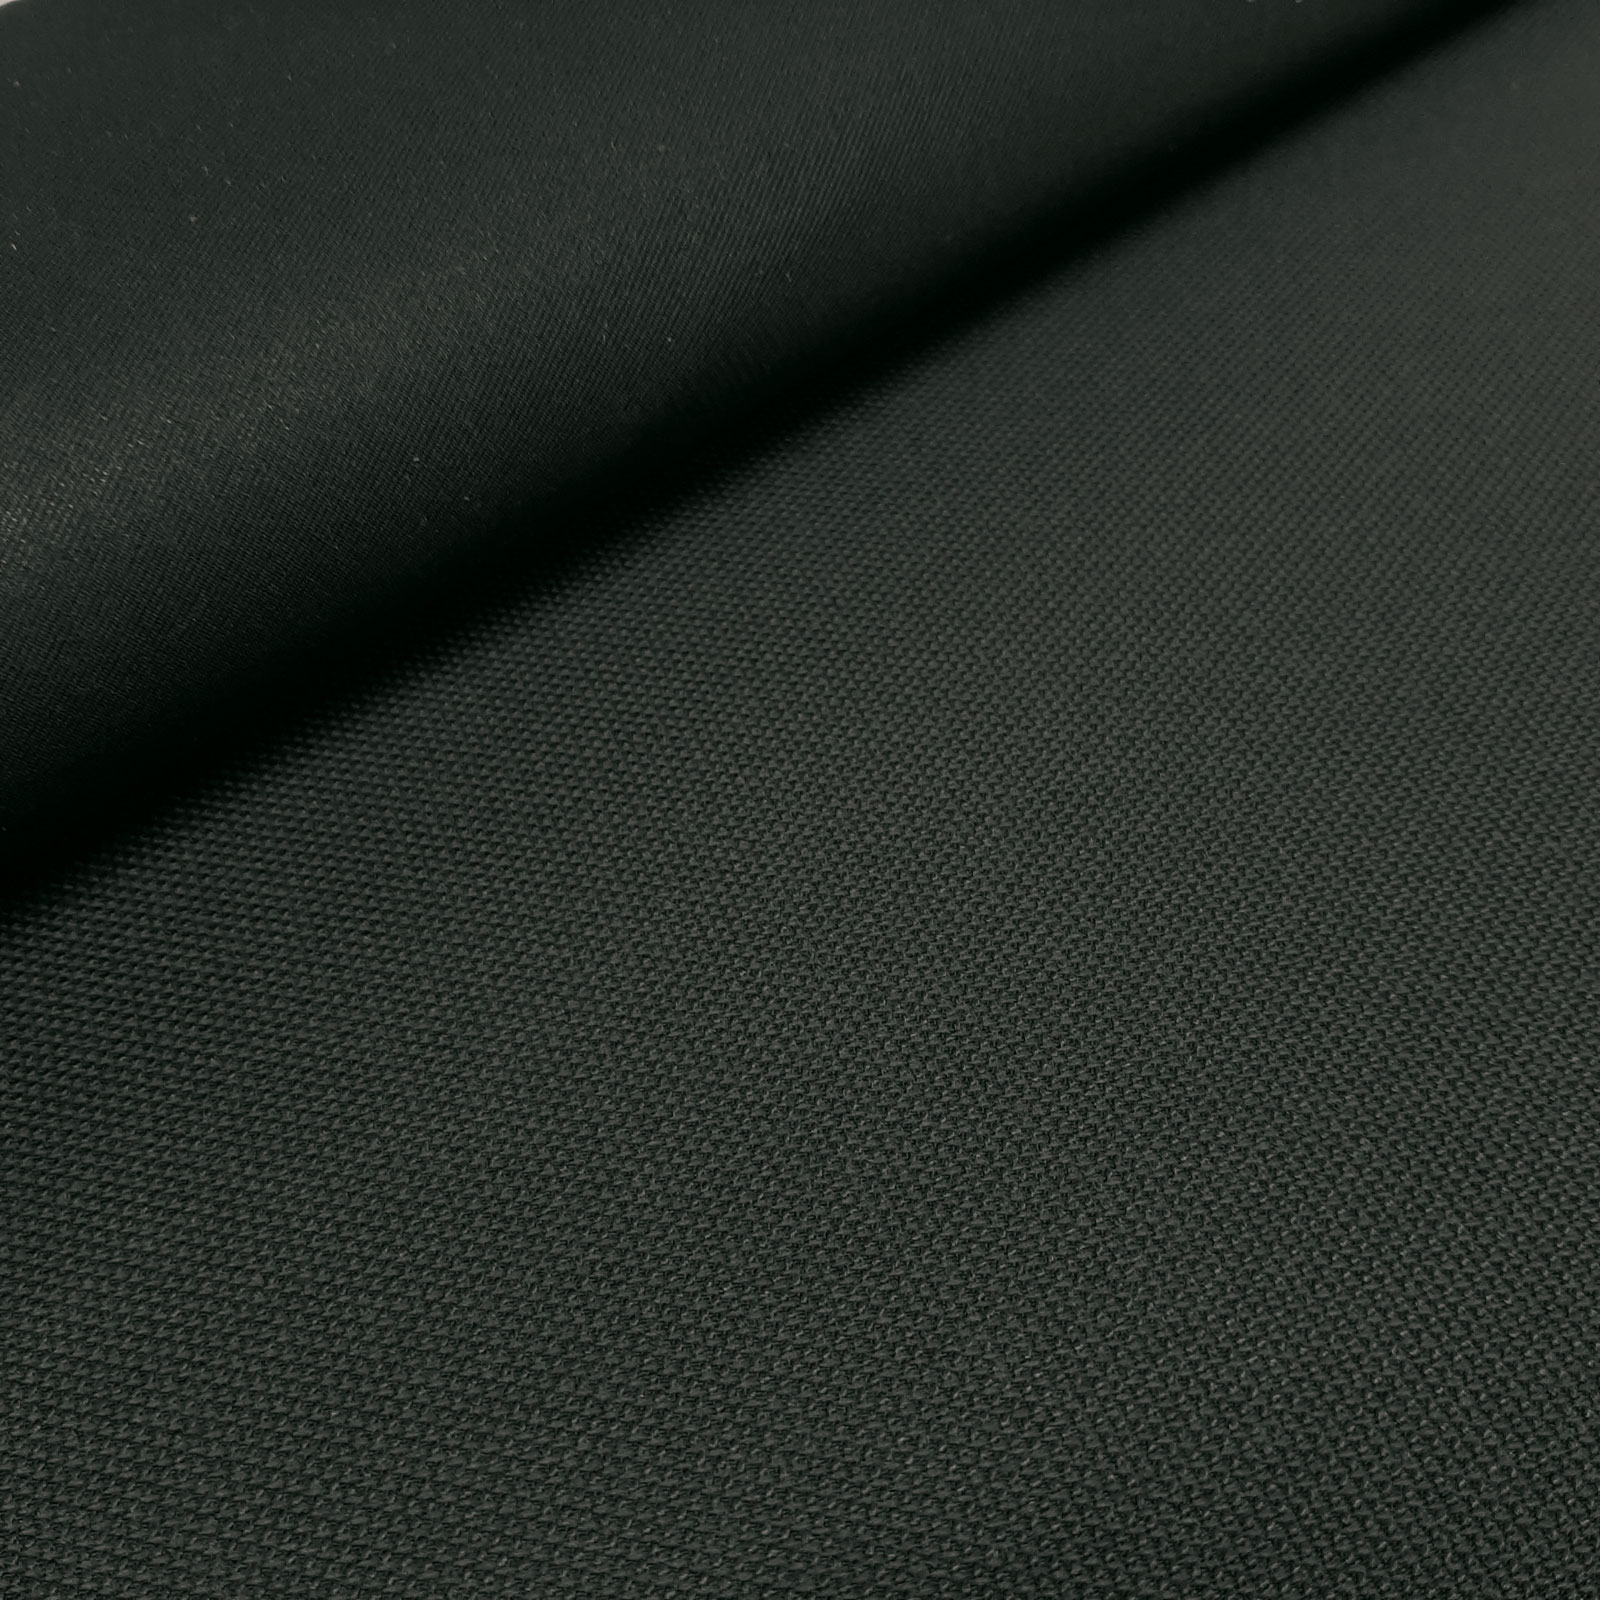 Alonsos - Keprotec® 3-layer laminate - Private Black per 10 cm